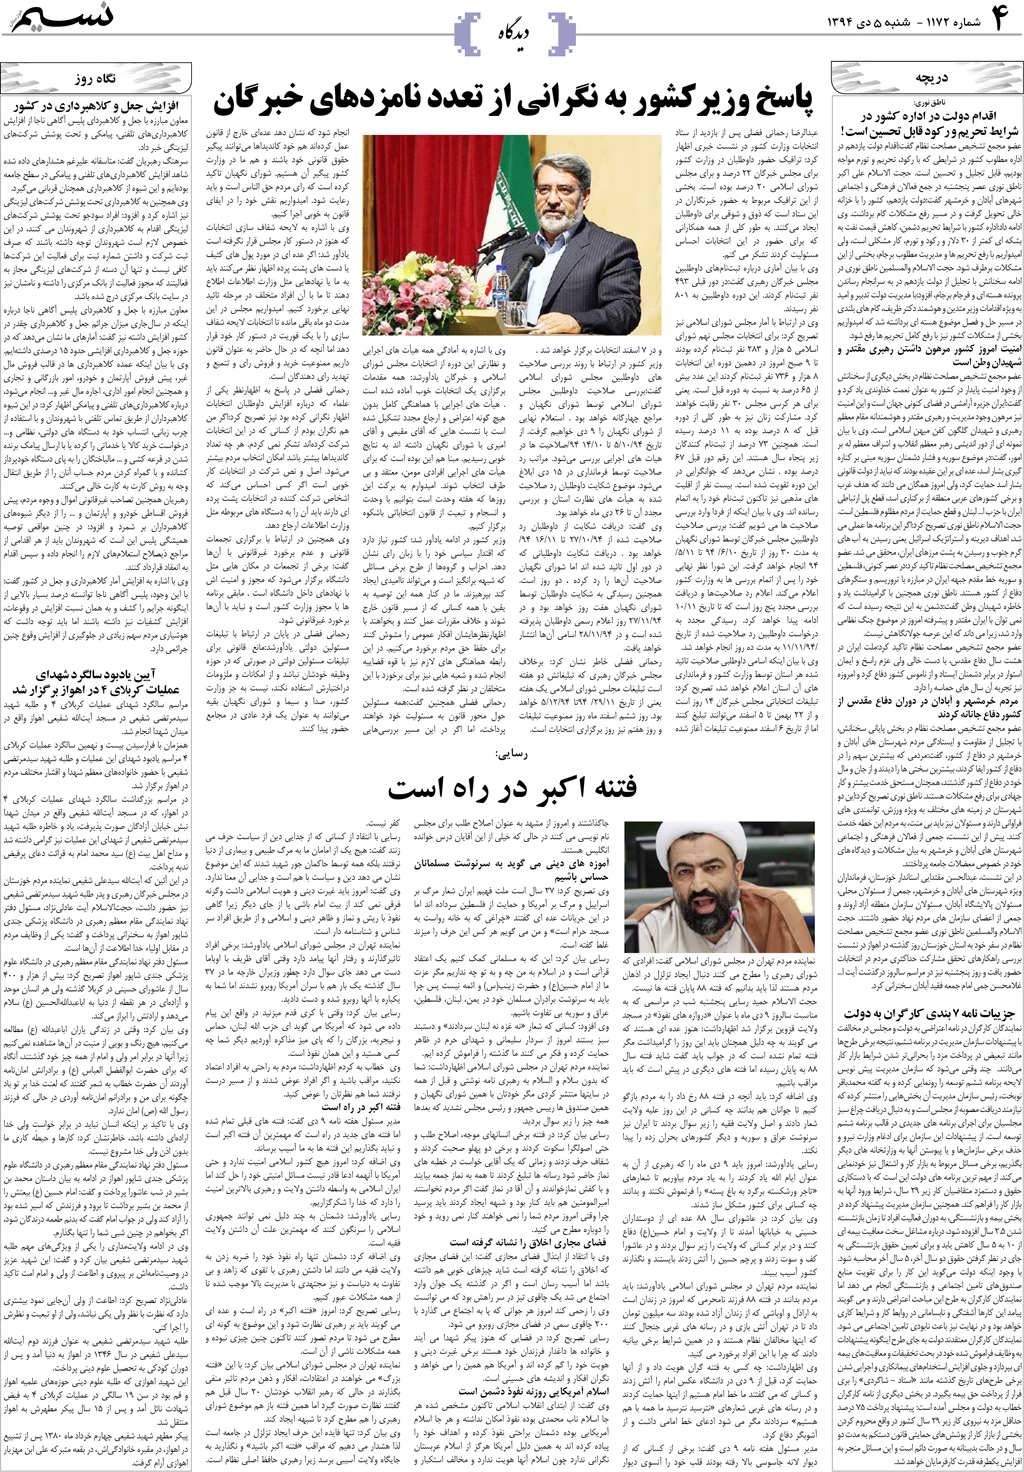 صفحه دیدگاه روزنامه نسیم شماره 1172